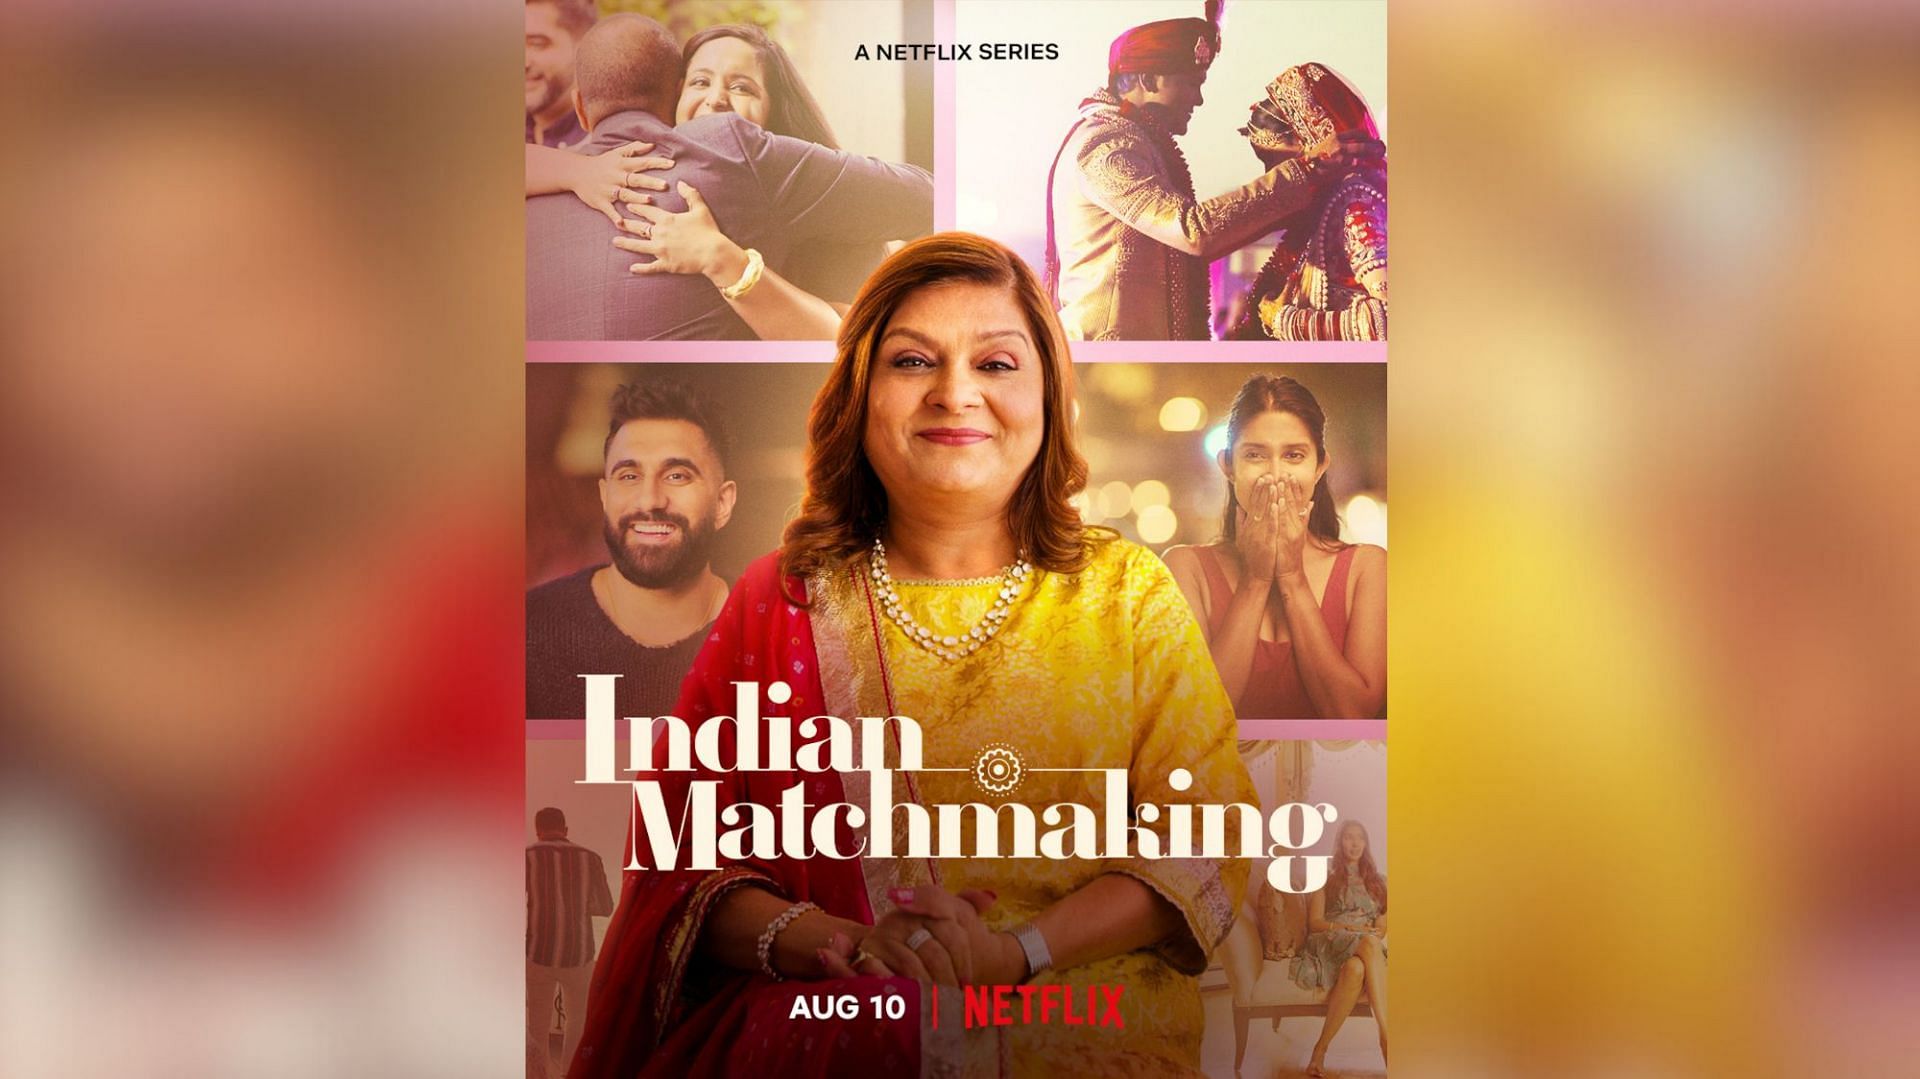 Indian Matchmaking (Image via Netflix)